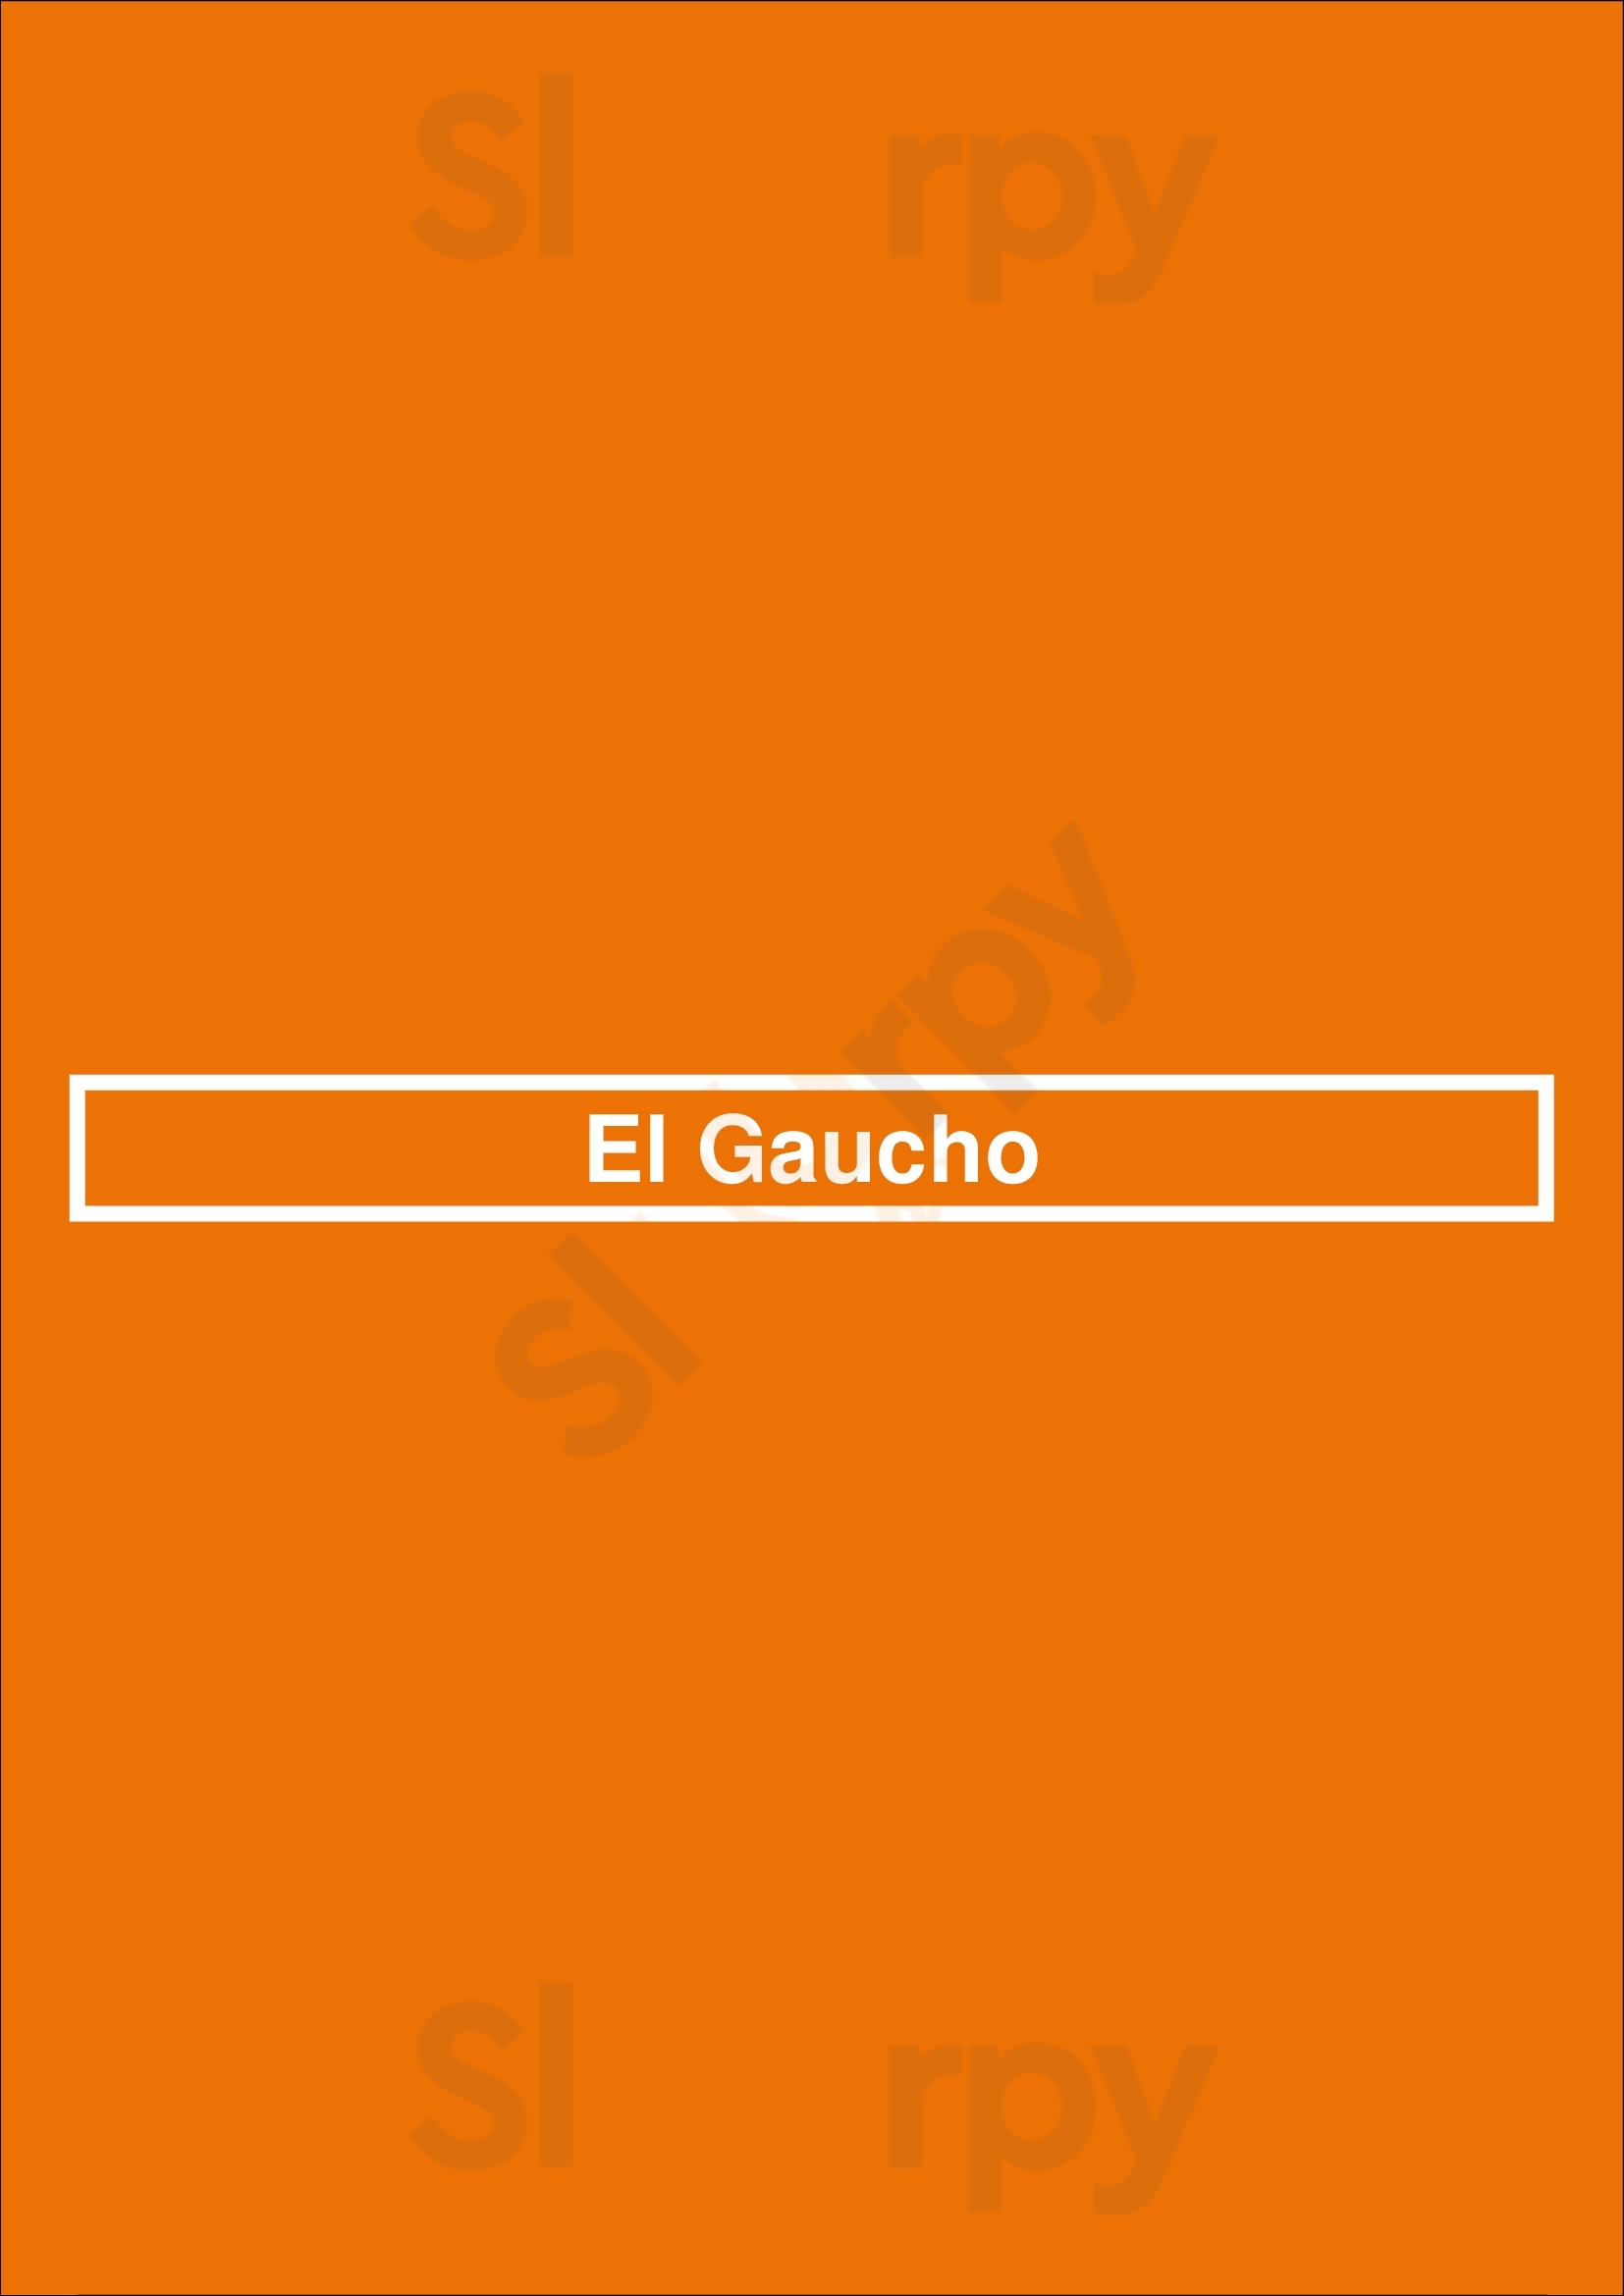 El Gaucho Hoorn Menu - 1